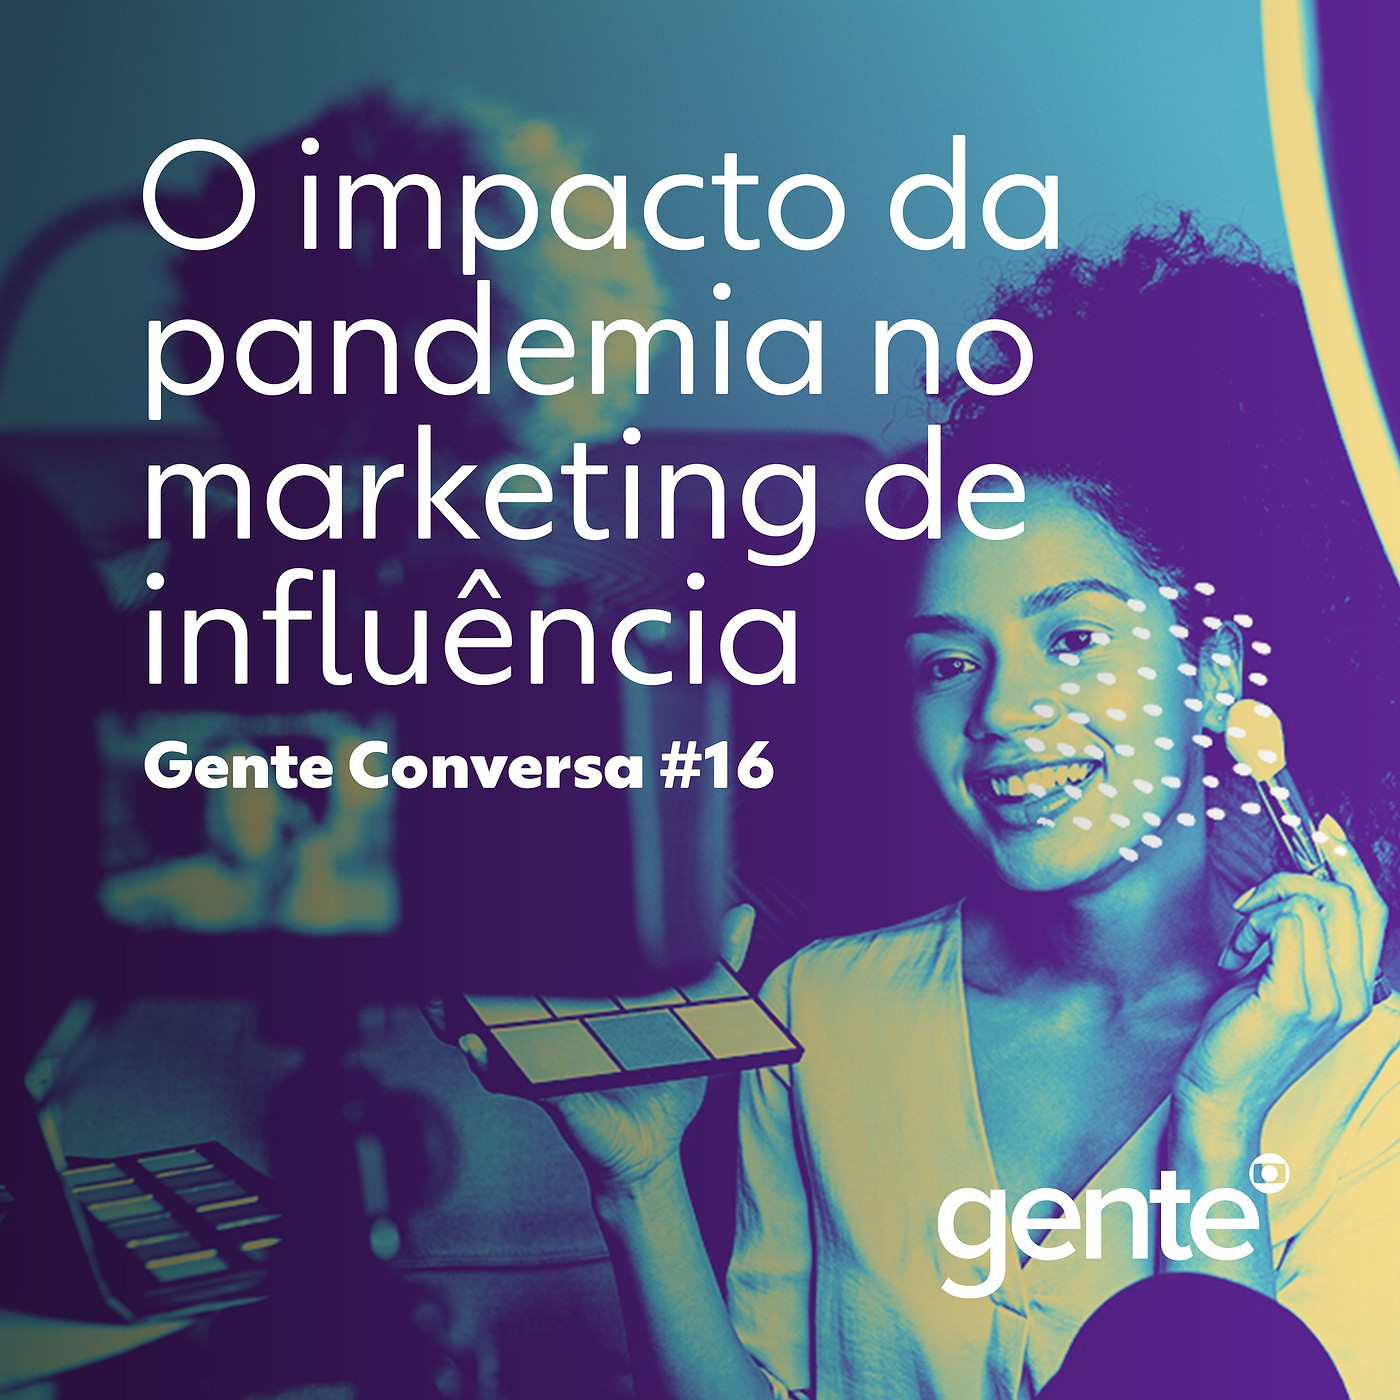 Gente Conversa #16 | O impacto da pandemia no marketing de influência